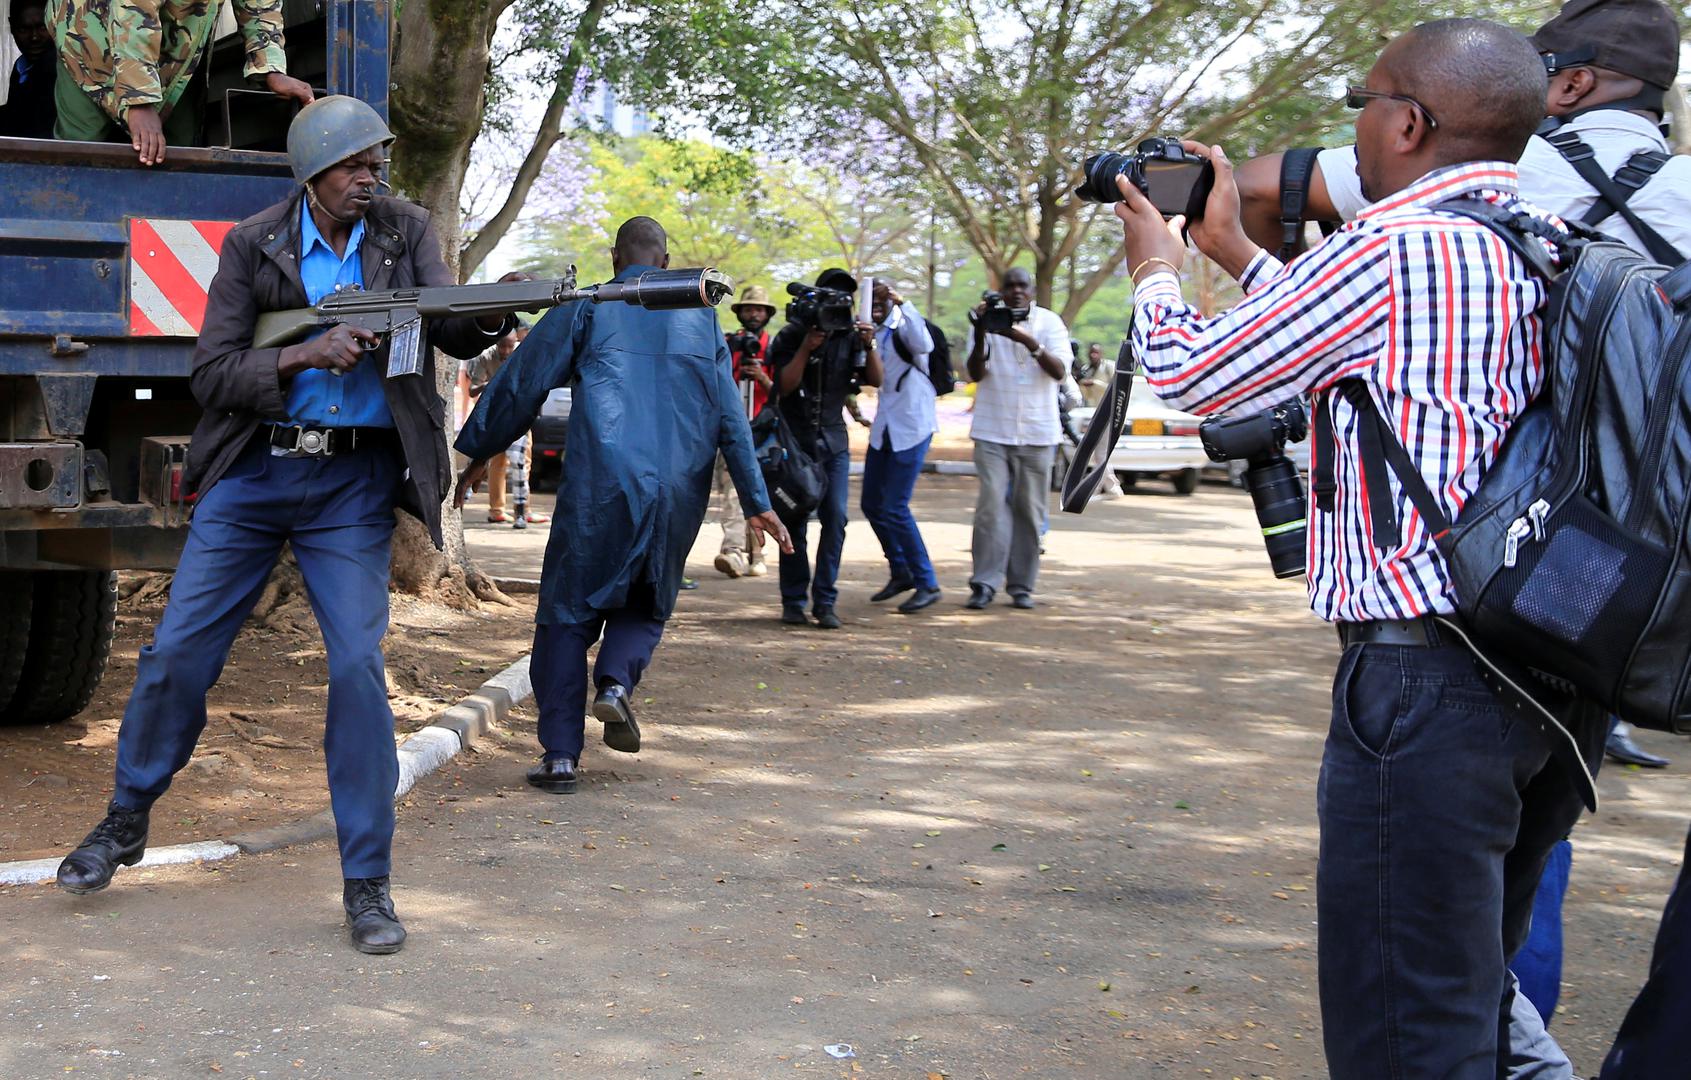 عنصر من شرطة مكافحة الشغب يُطلق عبوة غاز مسيل للدموع أثناء تغطية صحفيين لمظاهرة ضدّ الفساد في العاصمة نيروبي، 3 نوفمبر/تشرين الثاني 2016.